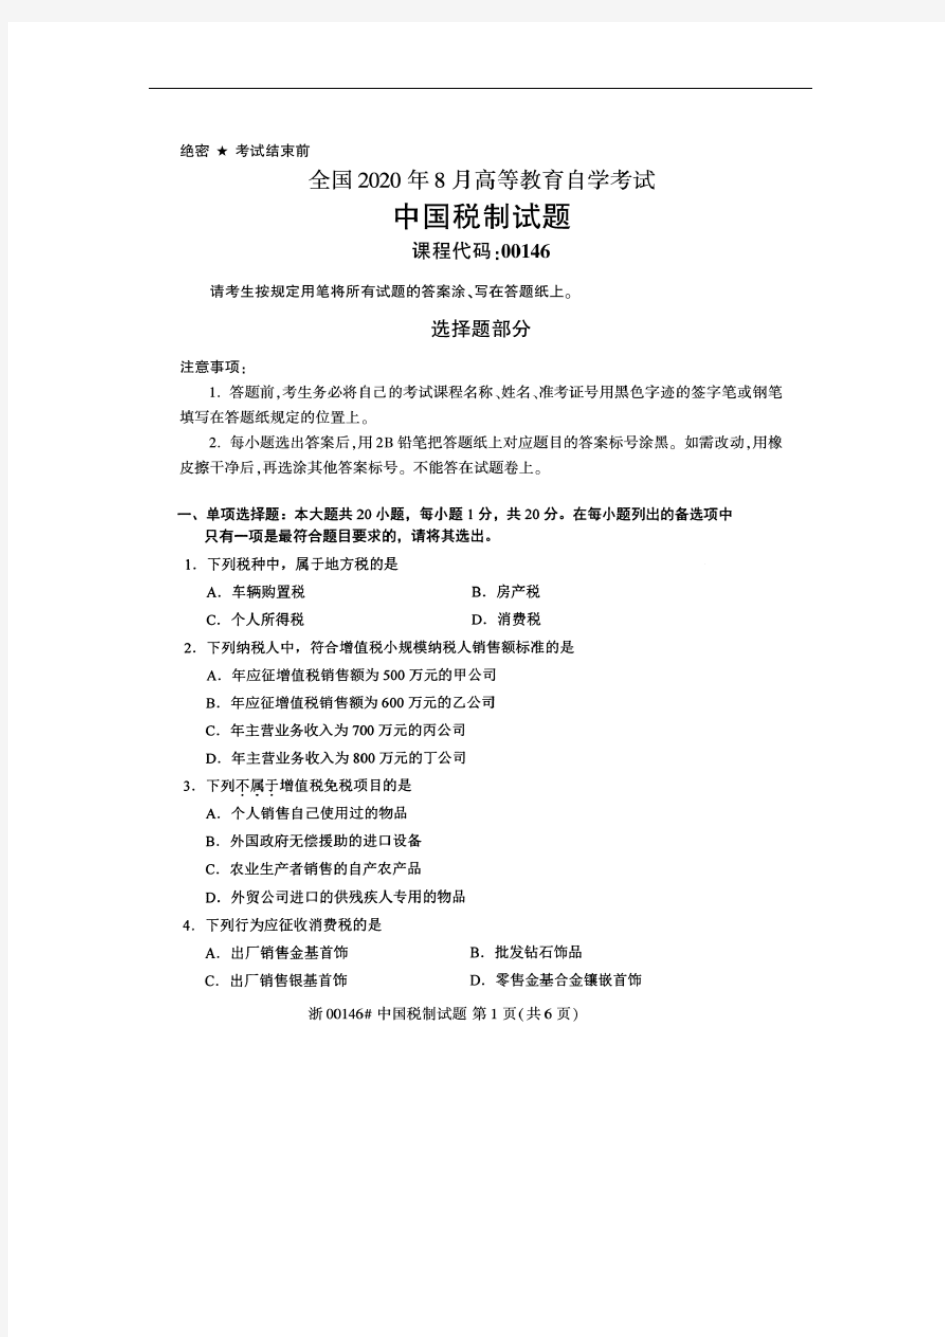 2020年8月自考00146中国税制试题及答案含评分标准